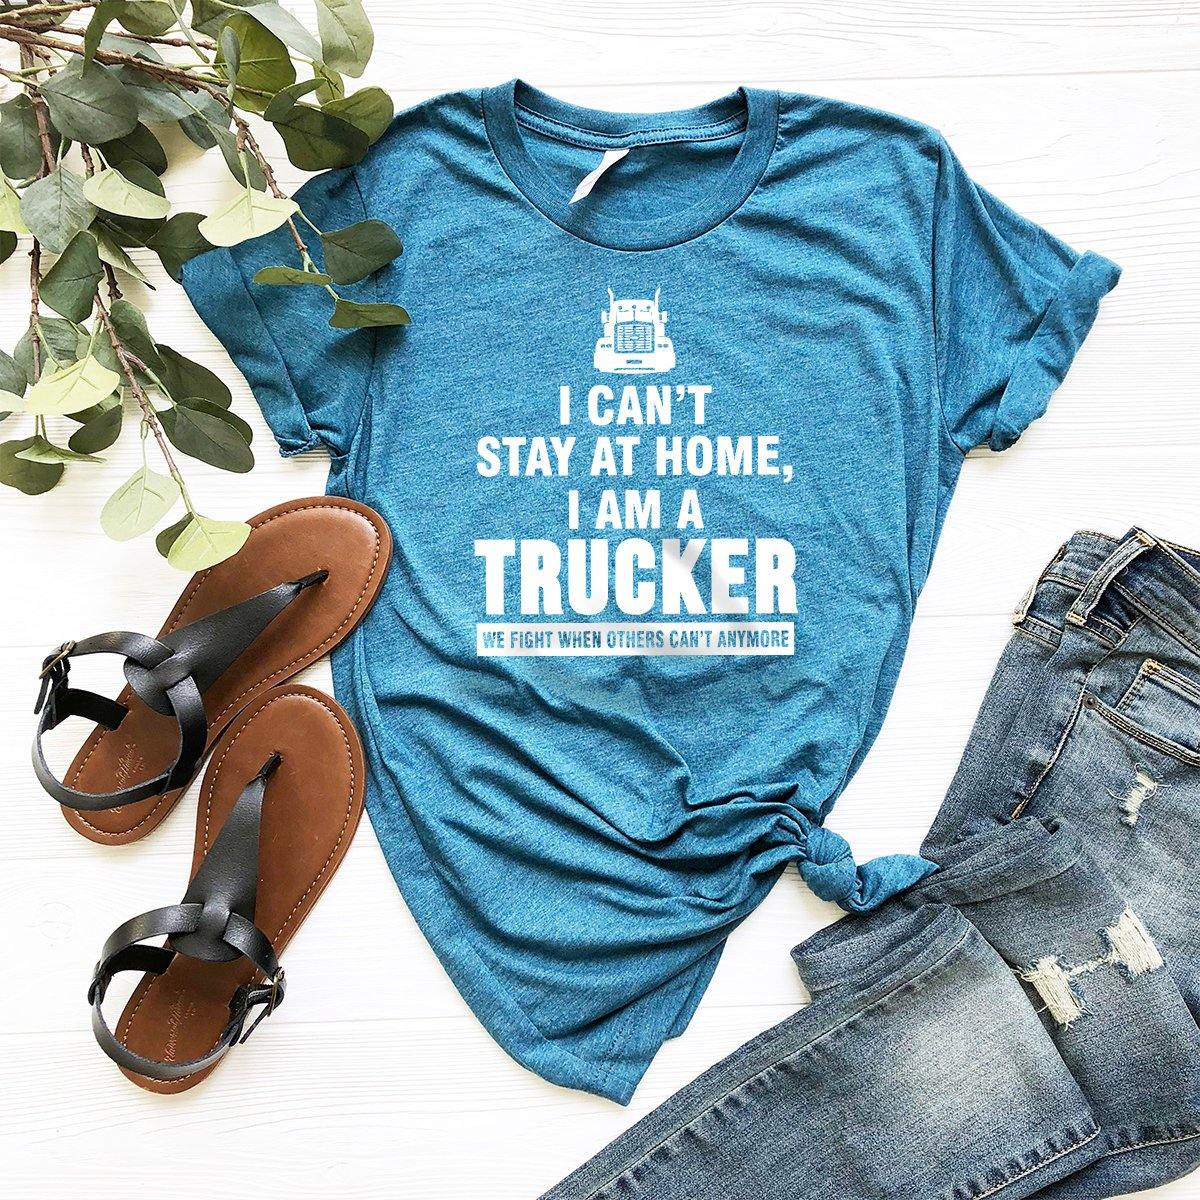 Truck Driver Shirt, Trucker Shirt, Truck Driver Gift, Trucker Dad Shirt, Trucker Gift, I Can't Stay At Home I Am A Trucker Shirt, Funny - Fastdeliverytees.com